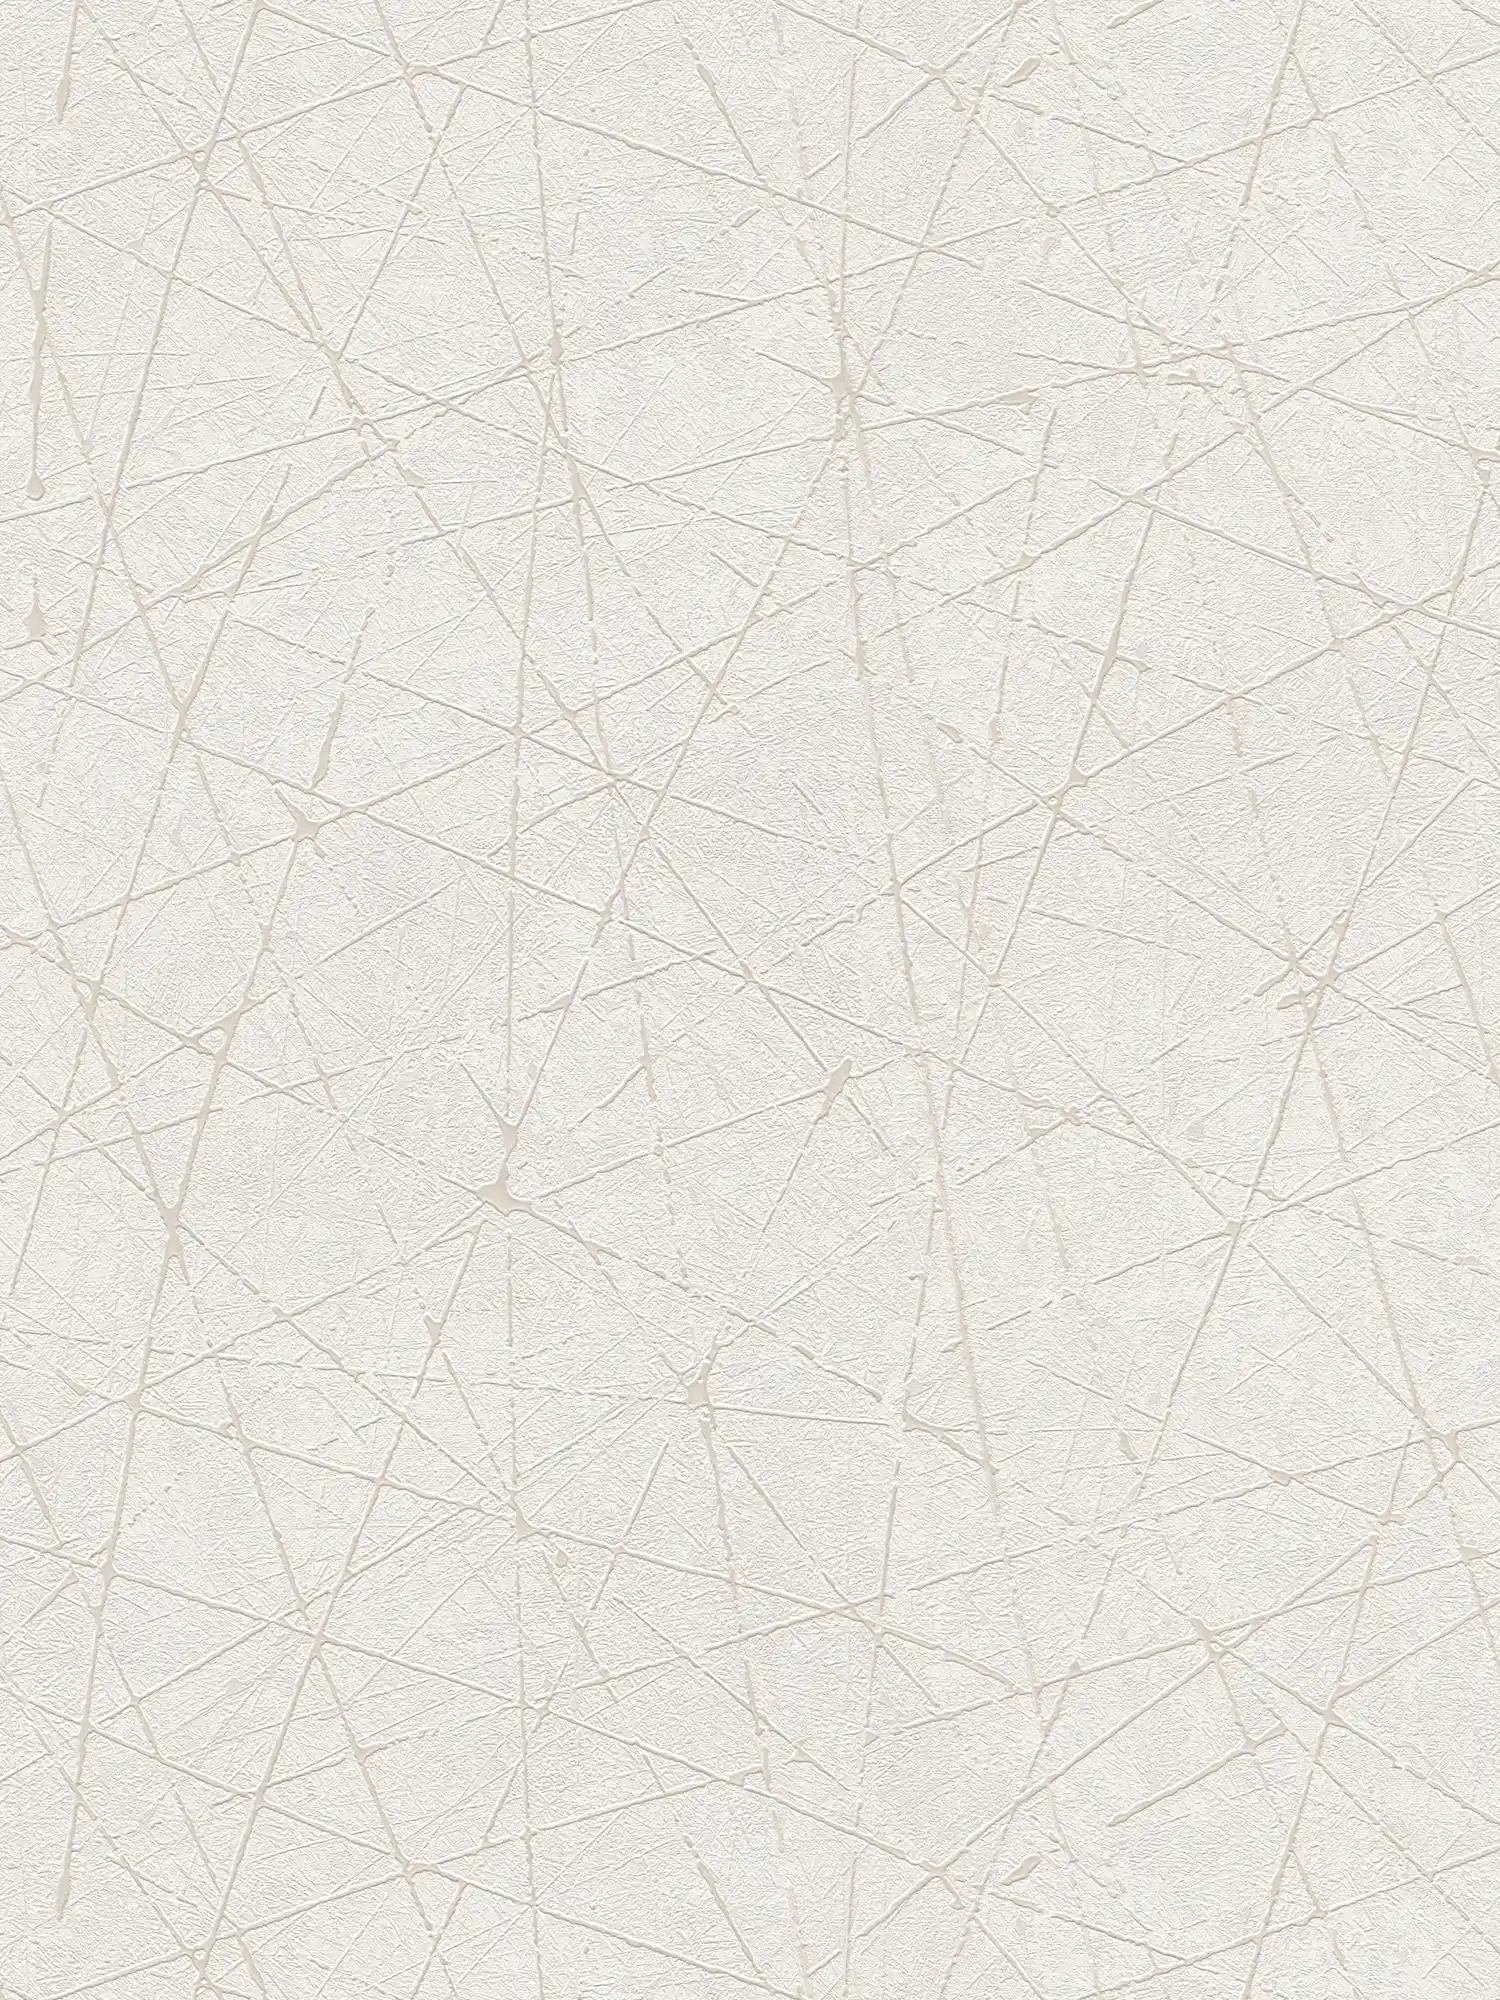         Vliestapete mit grafischen Linienmuster – Weiß, Creme, Silber
    